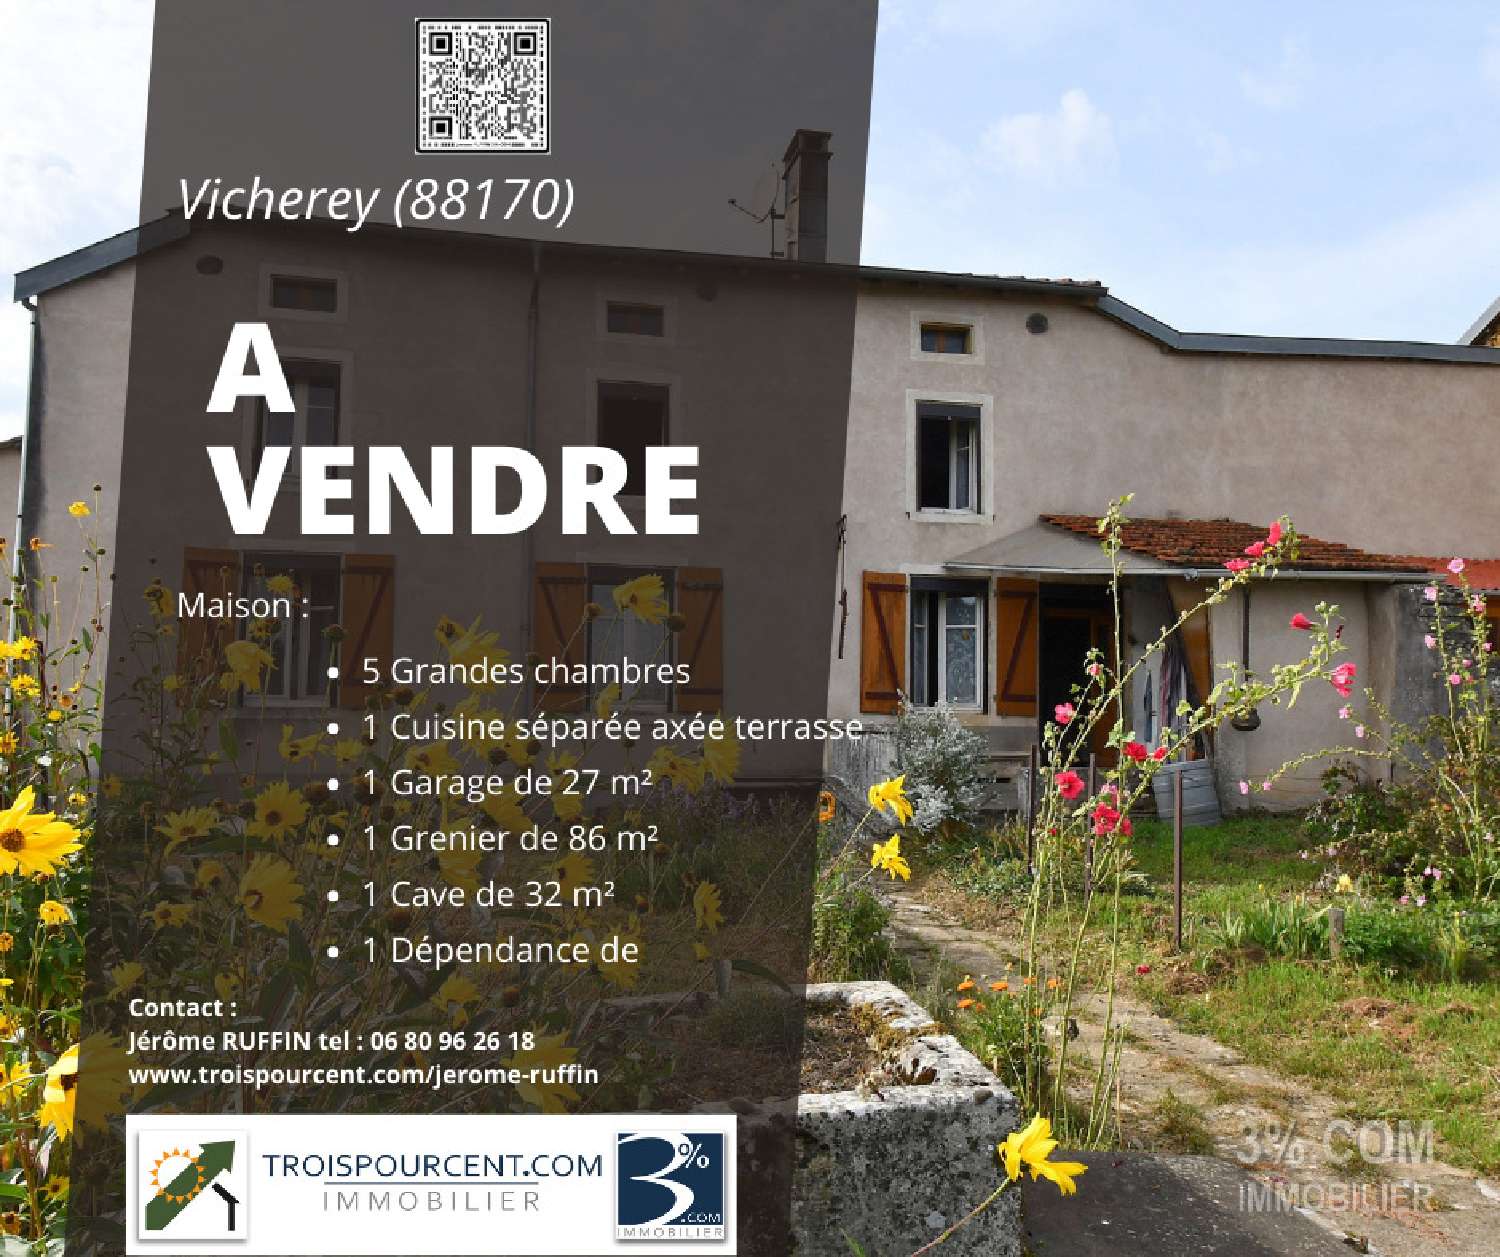 Vicherey Vosges village house foto 6826537